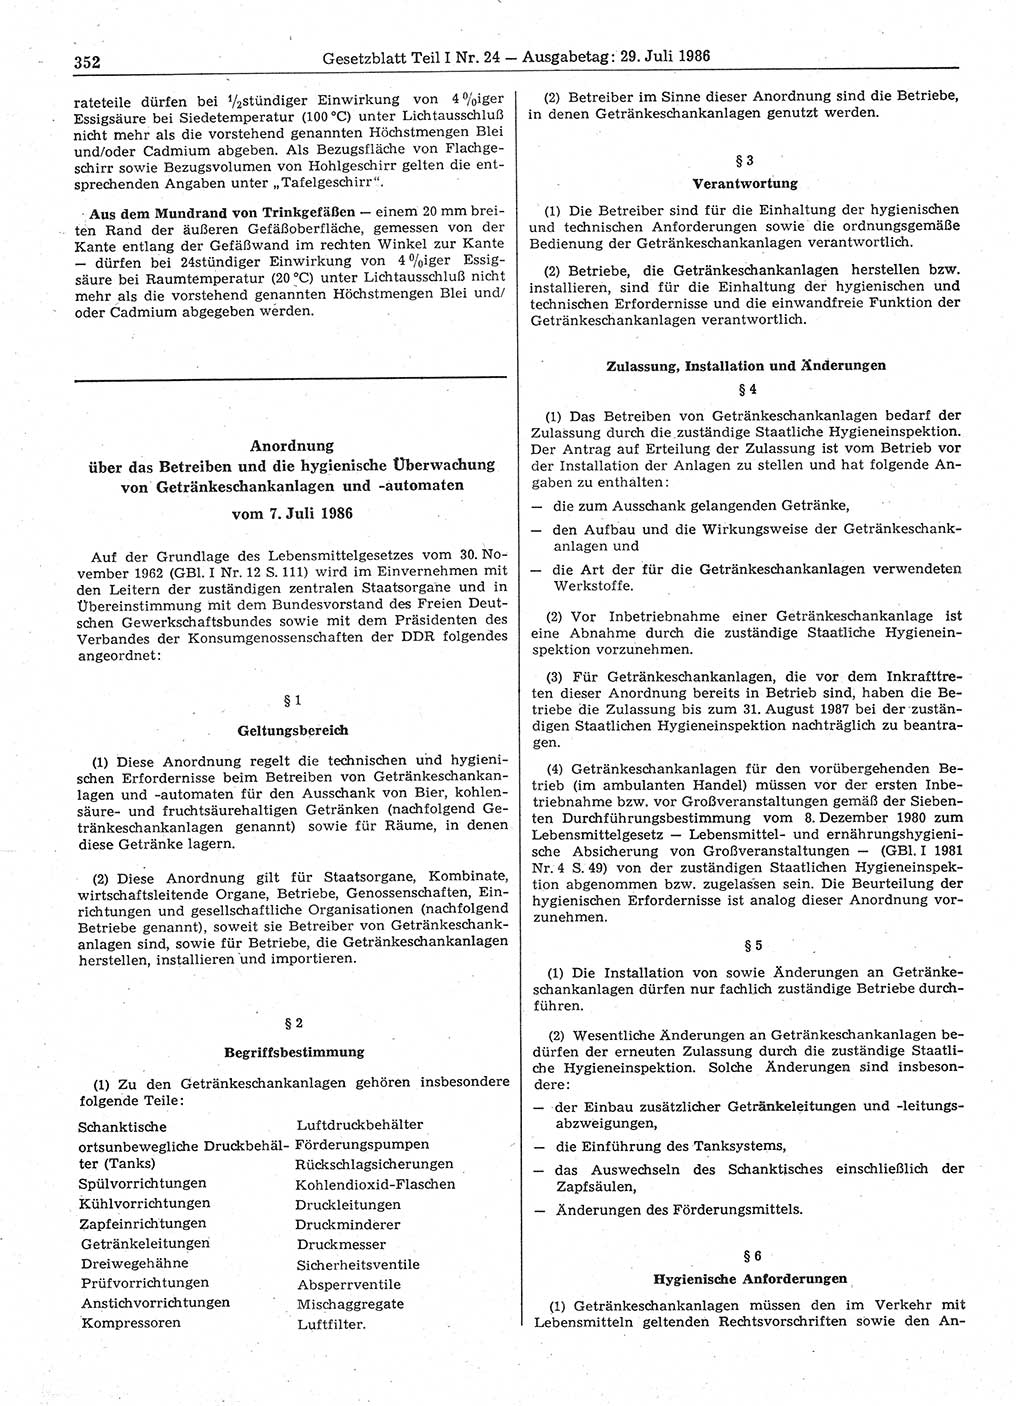 Gesetzblatt (GBl.) der Deutschen Demokratischen Republik (DDR) Teil Ⅰ 1986, Seite 352 (GBl. DDR Ⅰ 1986, S. 352)